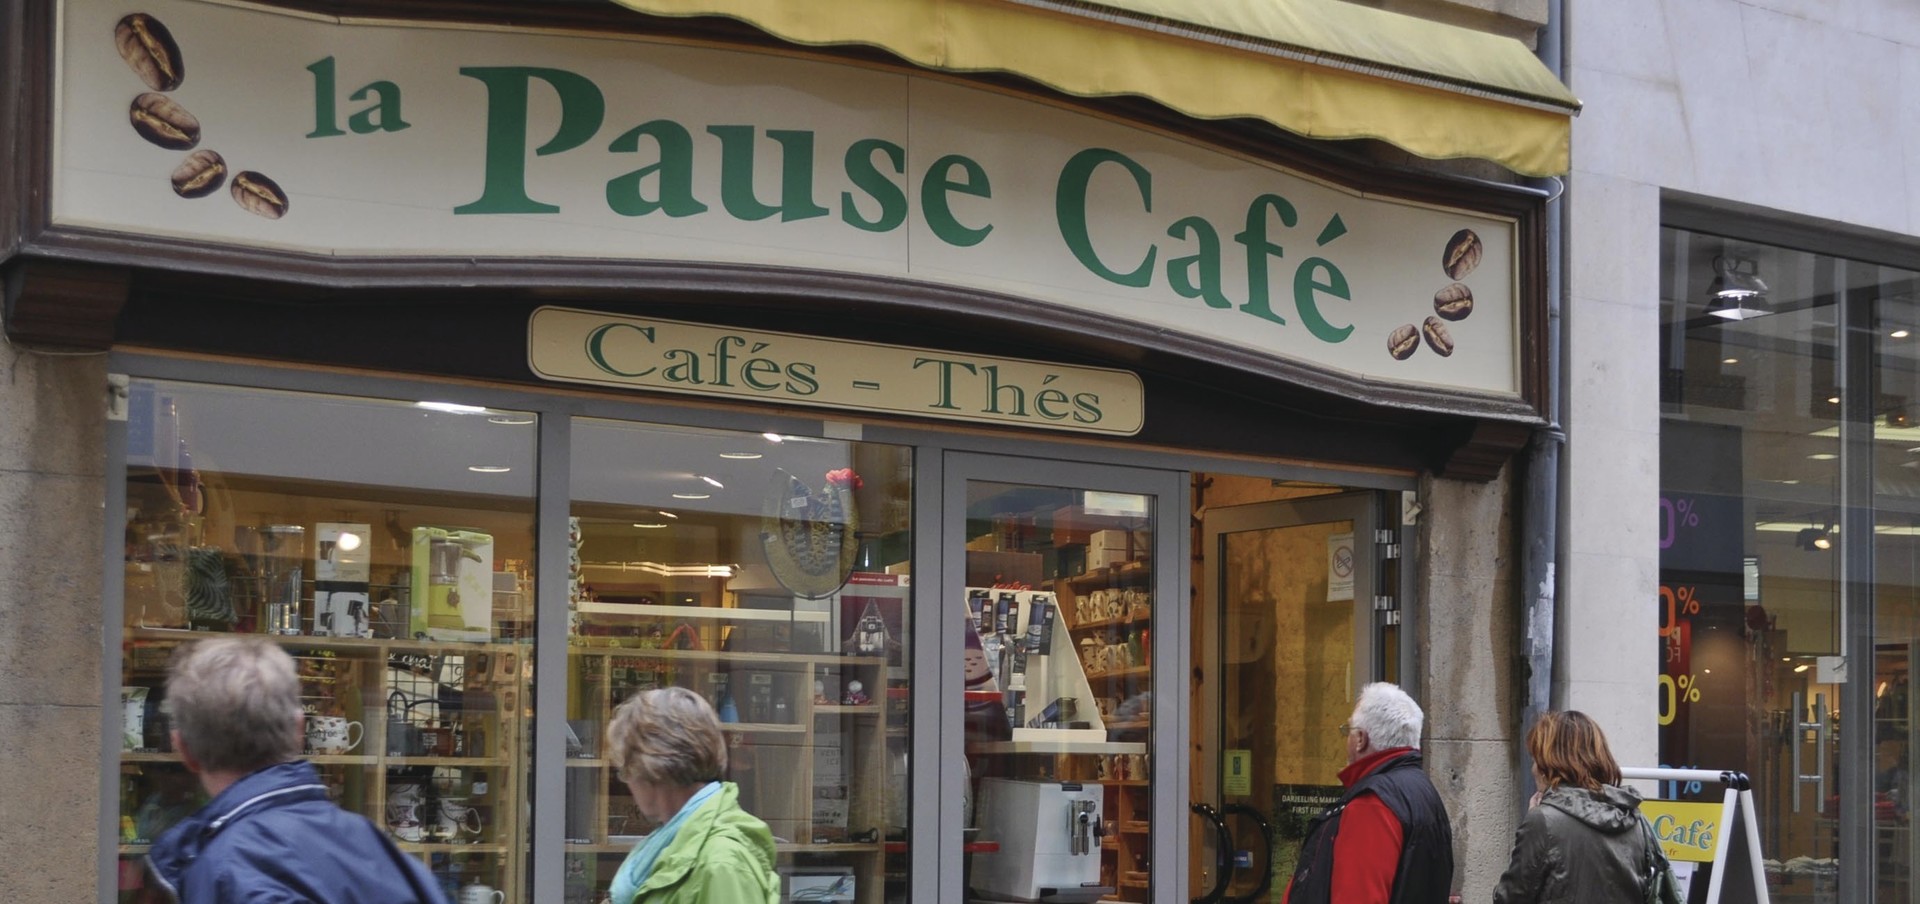 Boutique La Pause Caf  -  Sarl Autun Torrfaction - Sane-et-Loire